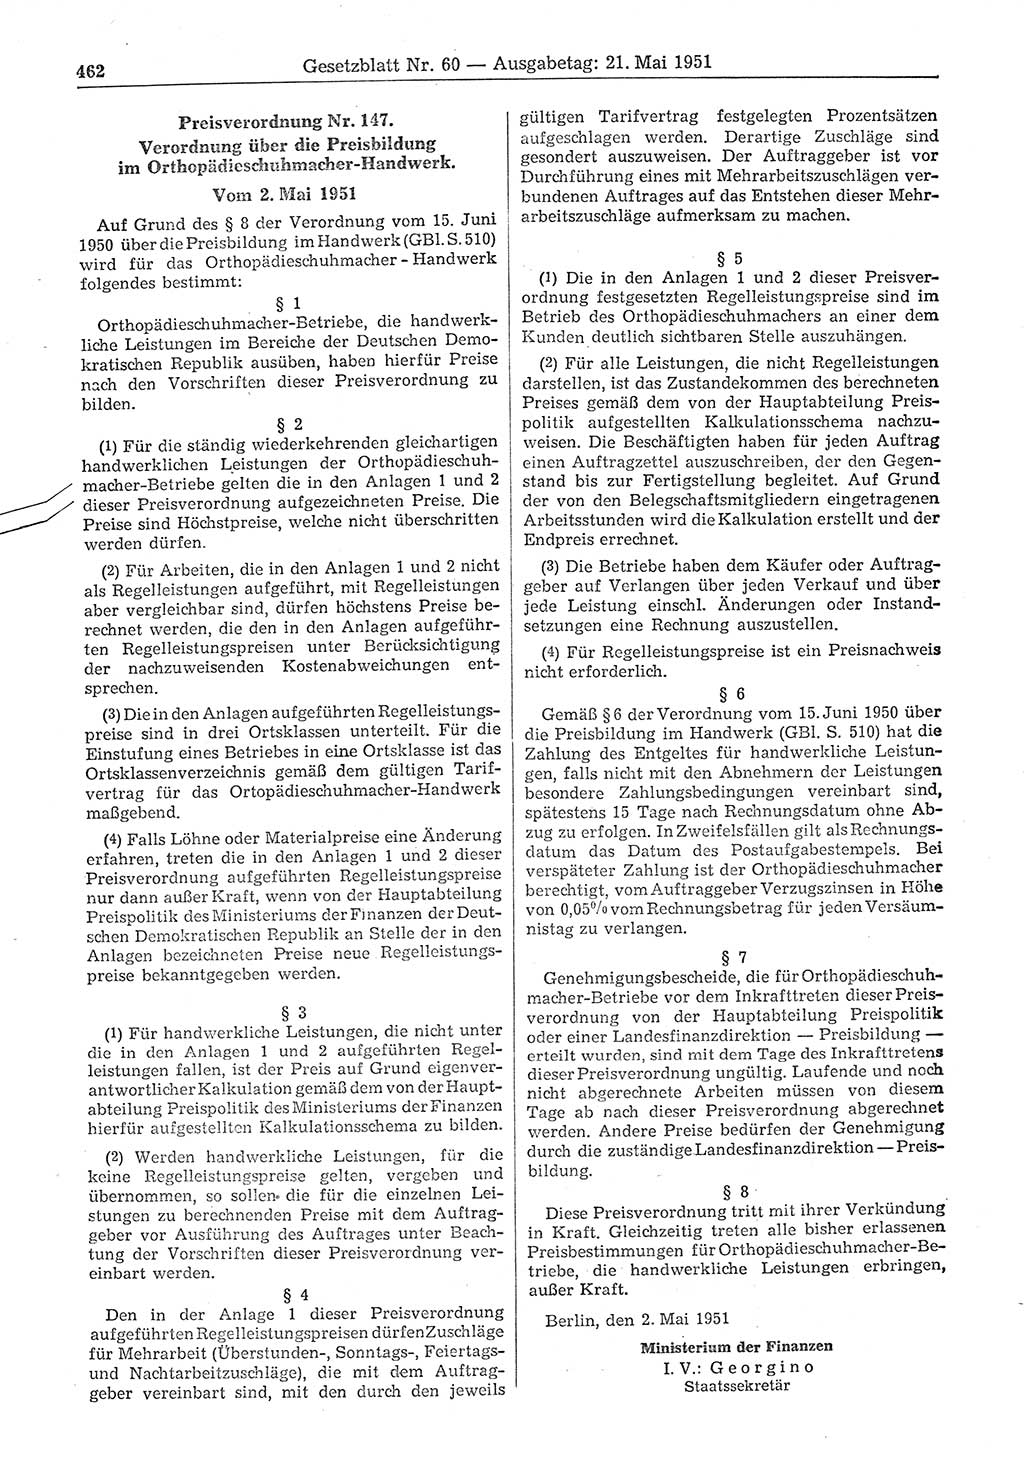 Gesetzblatt (GBl.) der Deutschen Demokratischen Republik (DDR) 1951, Seite 462 (GBl. DDR 1951, S. 462)